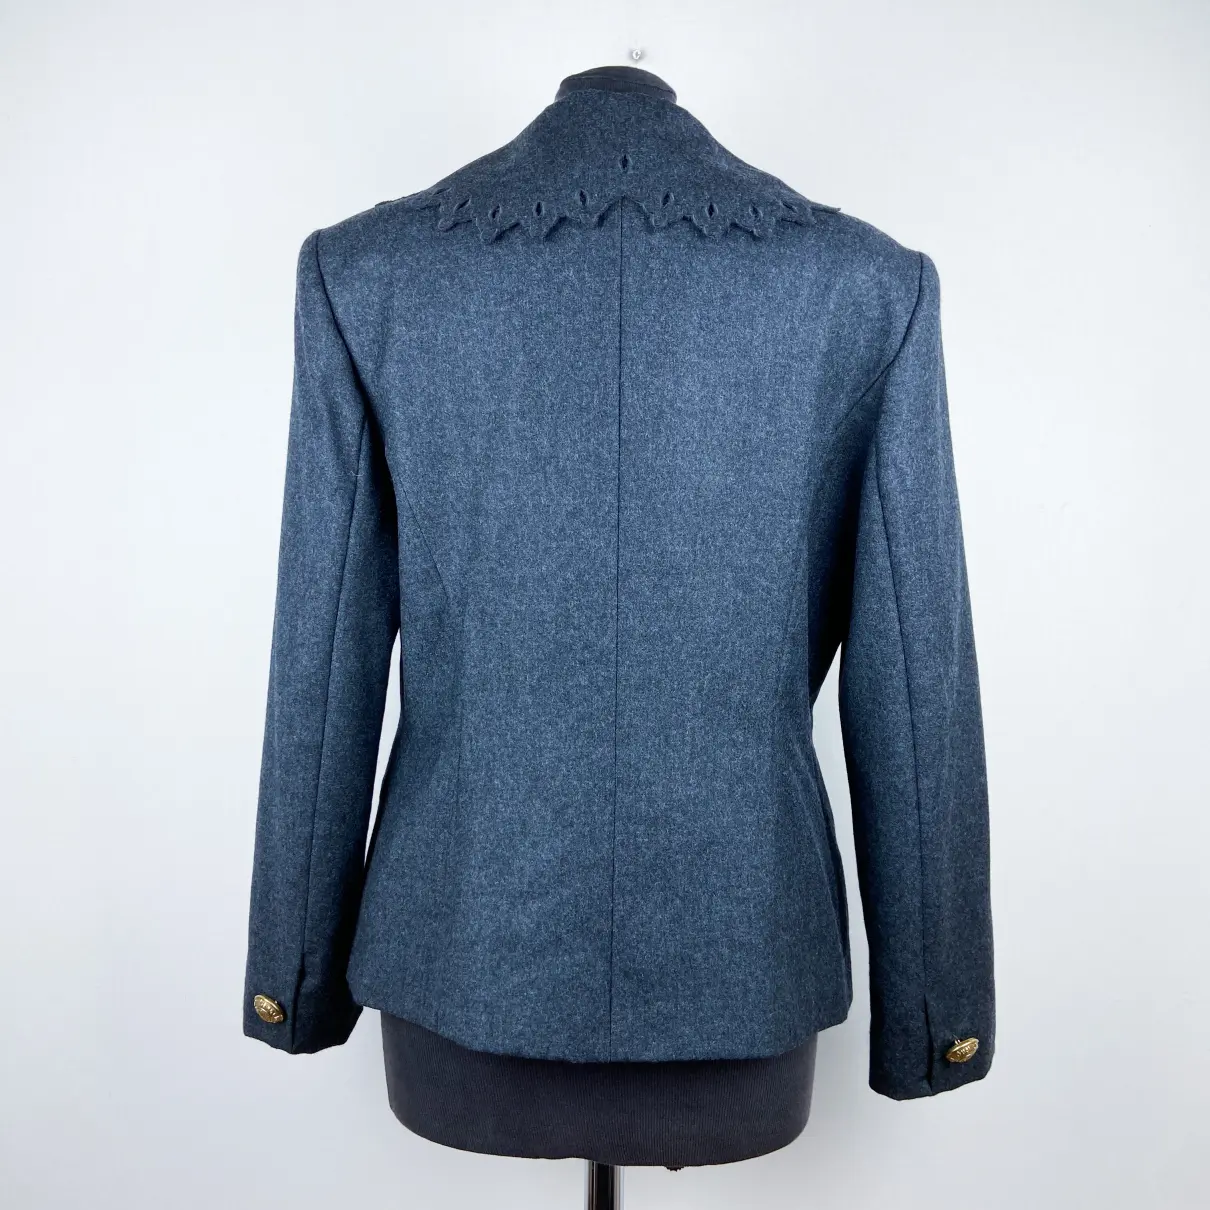 Buy Guy Laroche Wool blazer online - Vintage